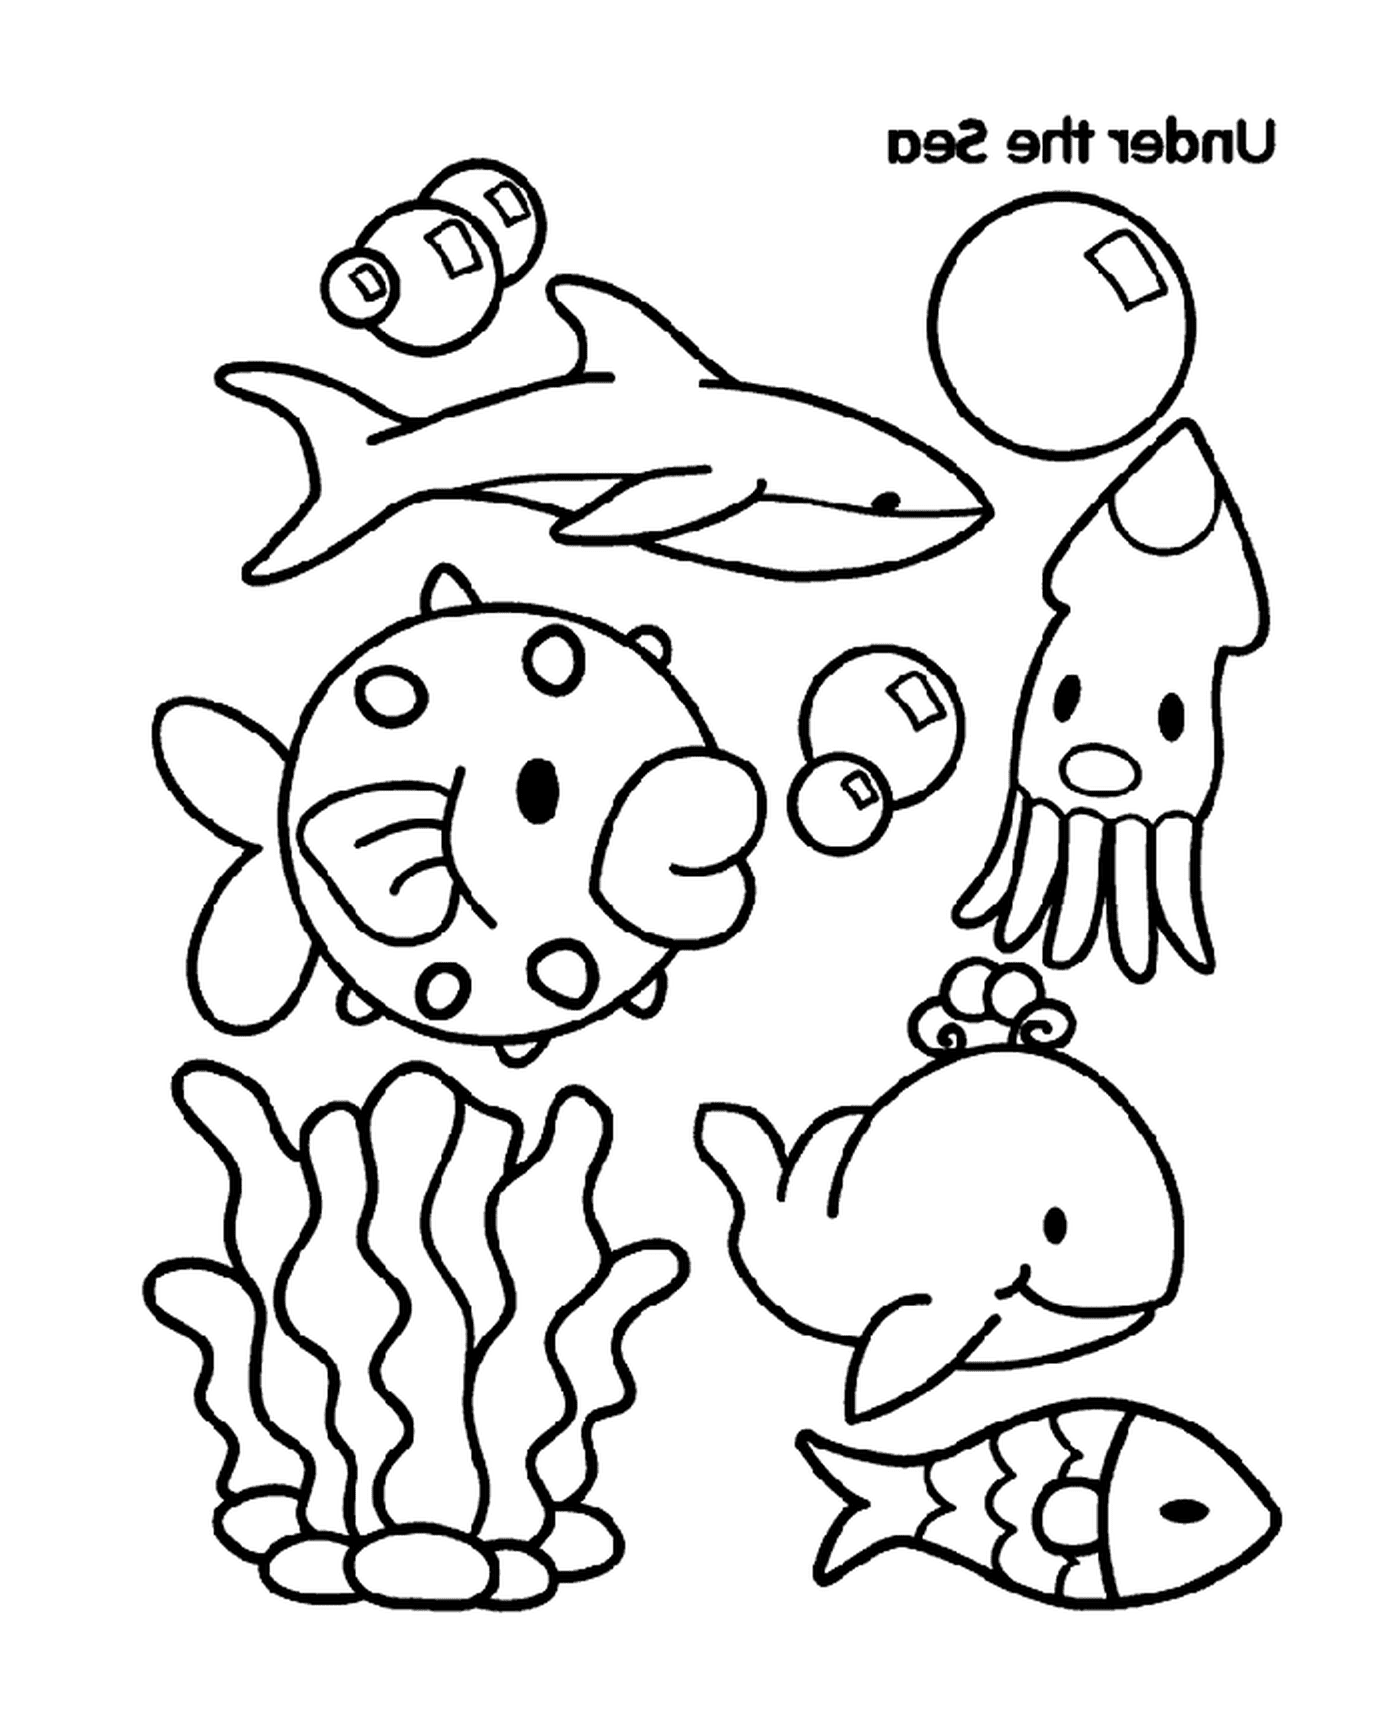  Un gruppo di animali marini 